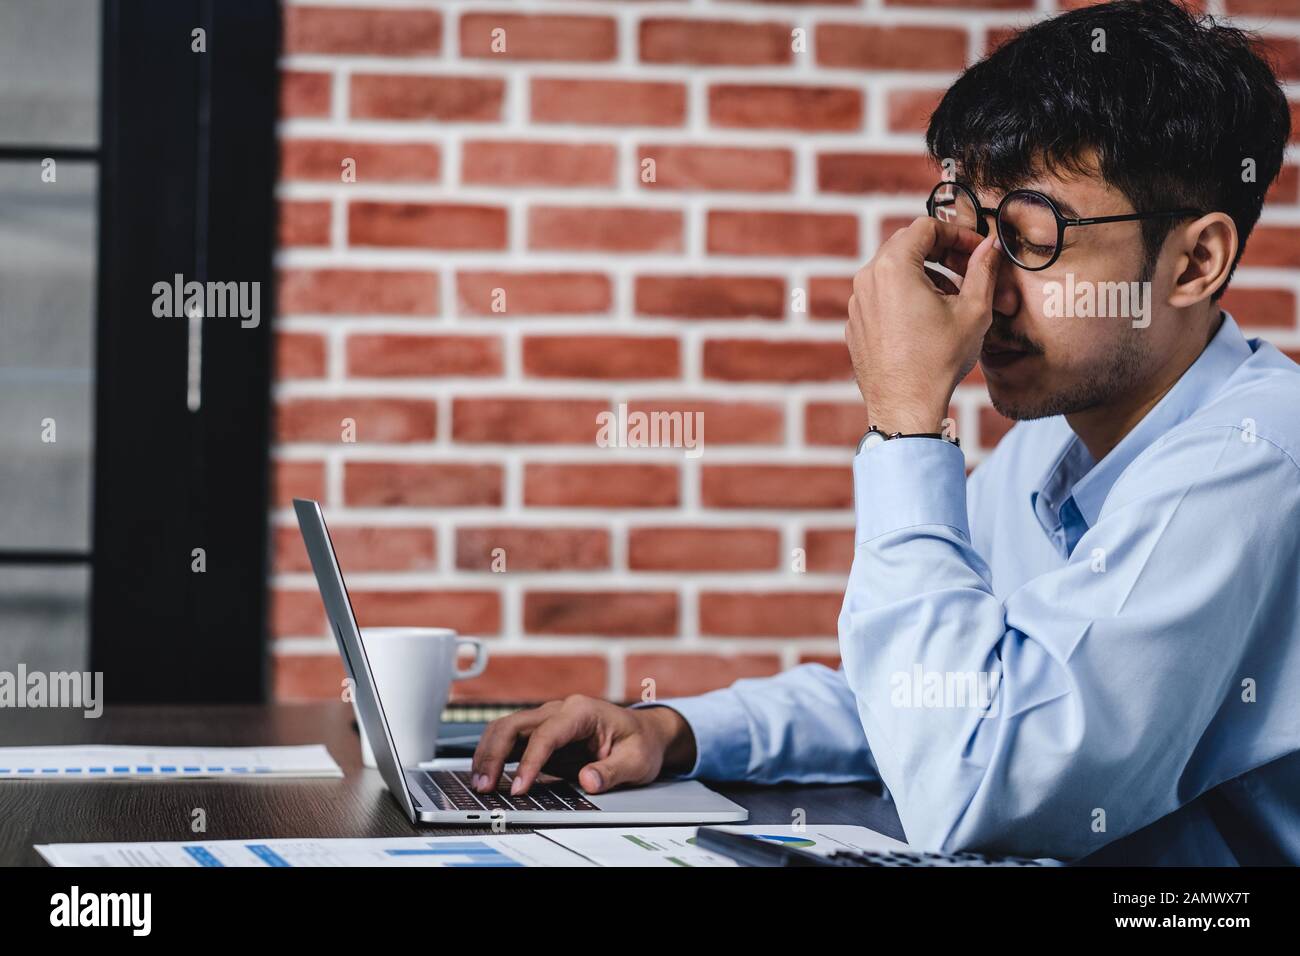 Asiatische Geschäftsmann Stress und Kopfschmerzen beim Arbeiten mit Laptop auf dem Schreibtisch bei der moderne Büro. Business fail Konzept. Mann gefangen Auge wenn überarbeitet. Stockfoto